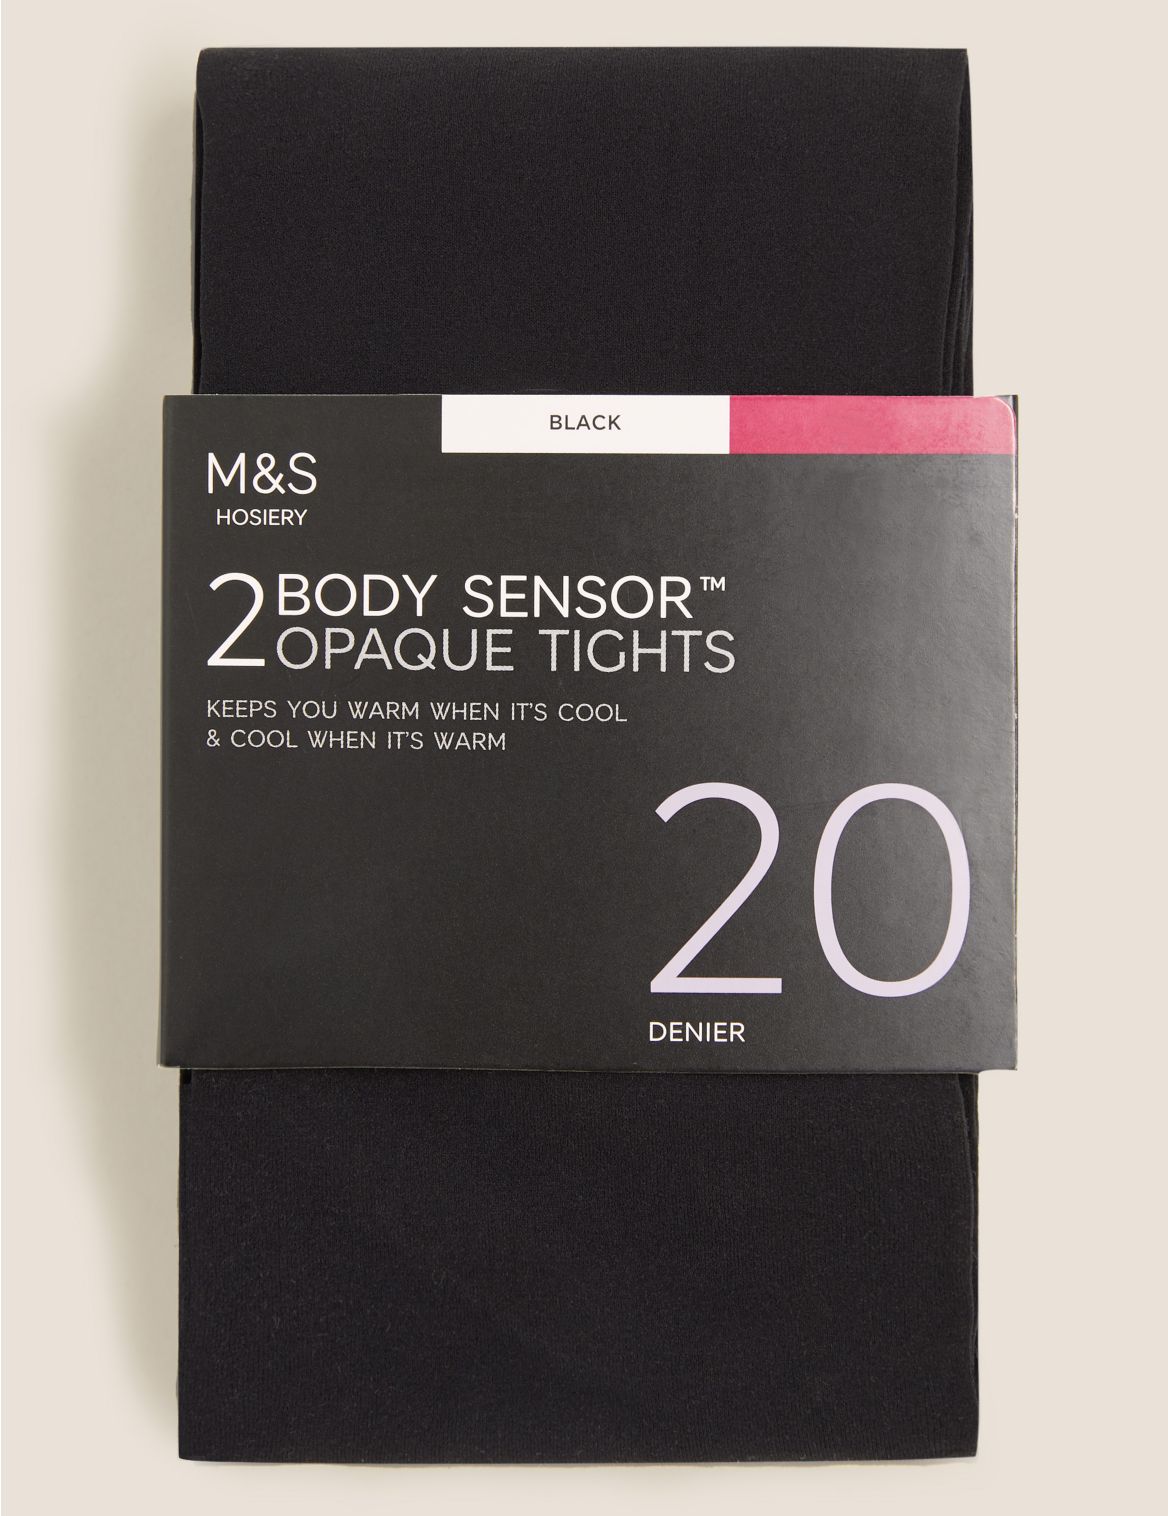 2pk 20 Denier Body Sensor&trade; Opaque Tights black